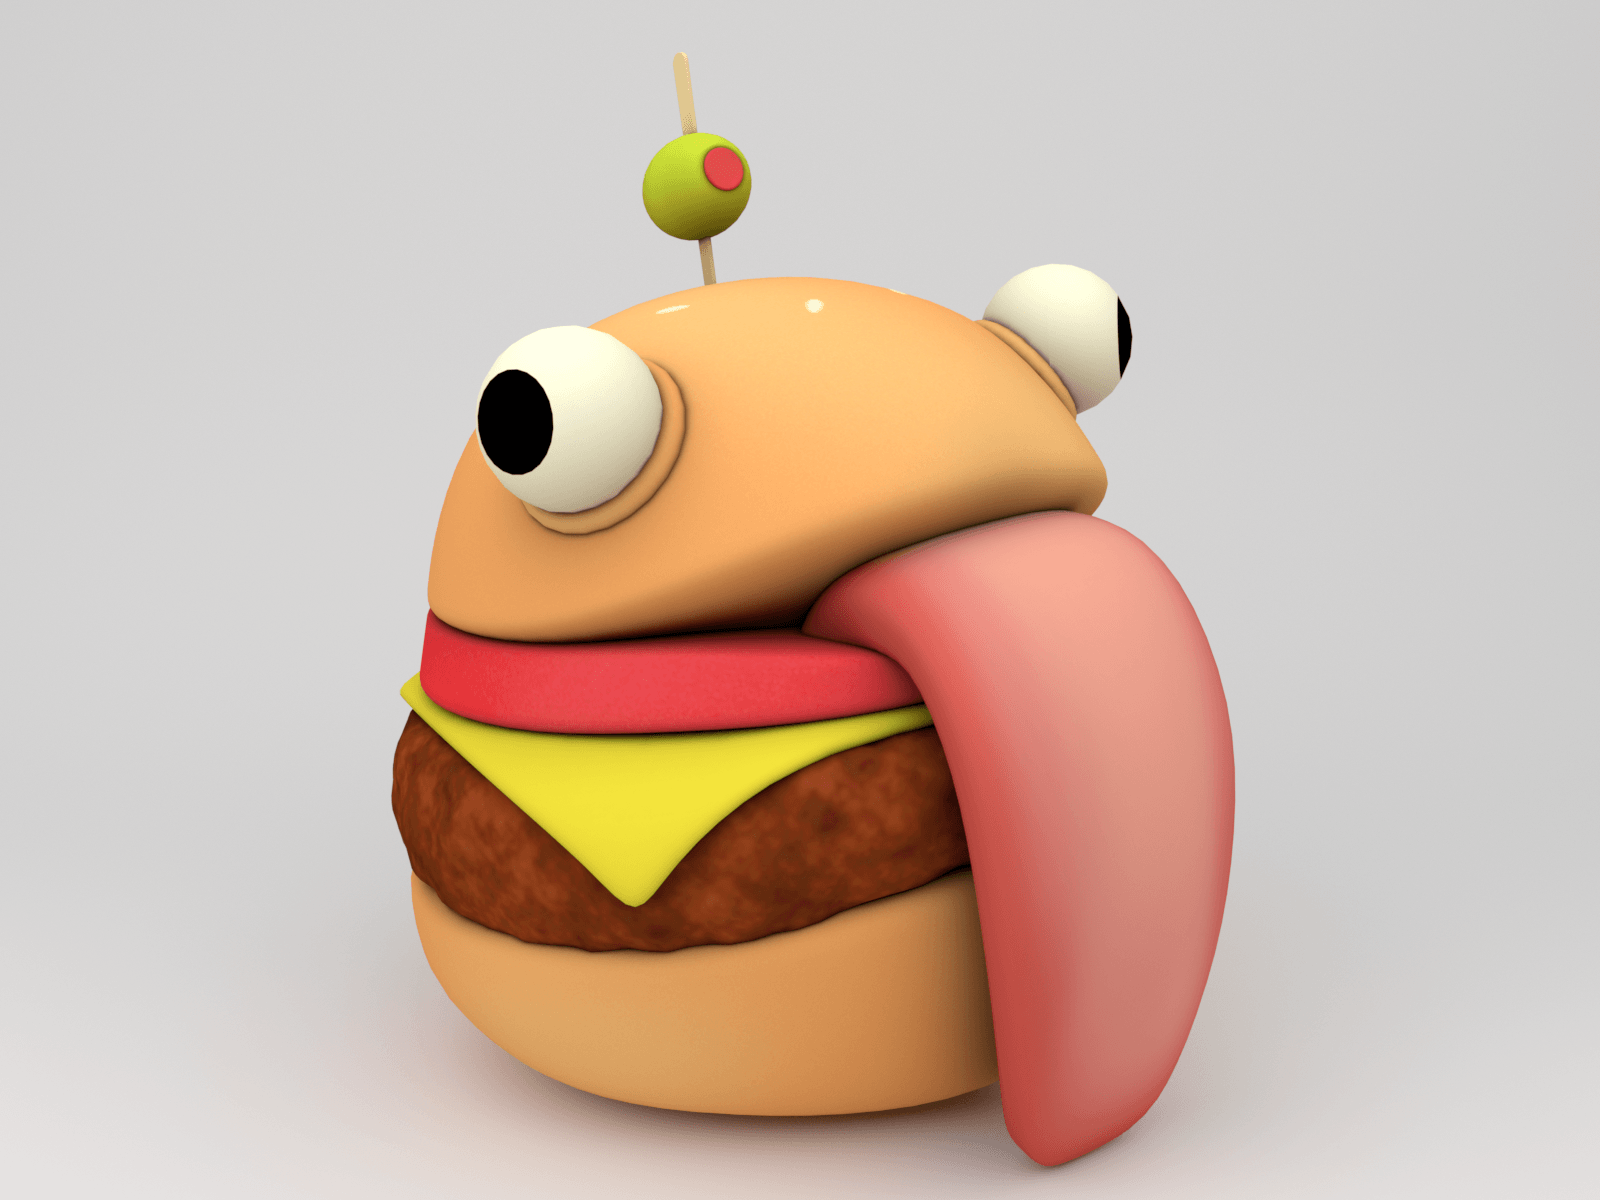 Durr Burger Logo - Durr Burger